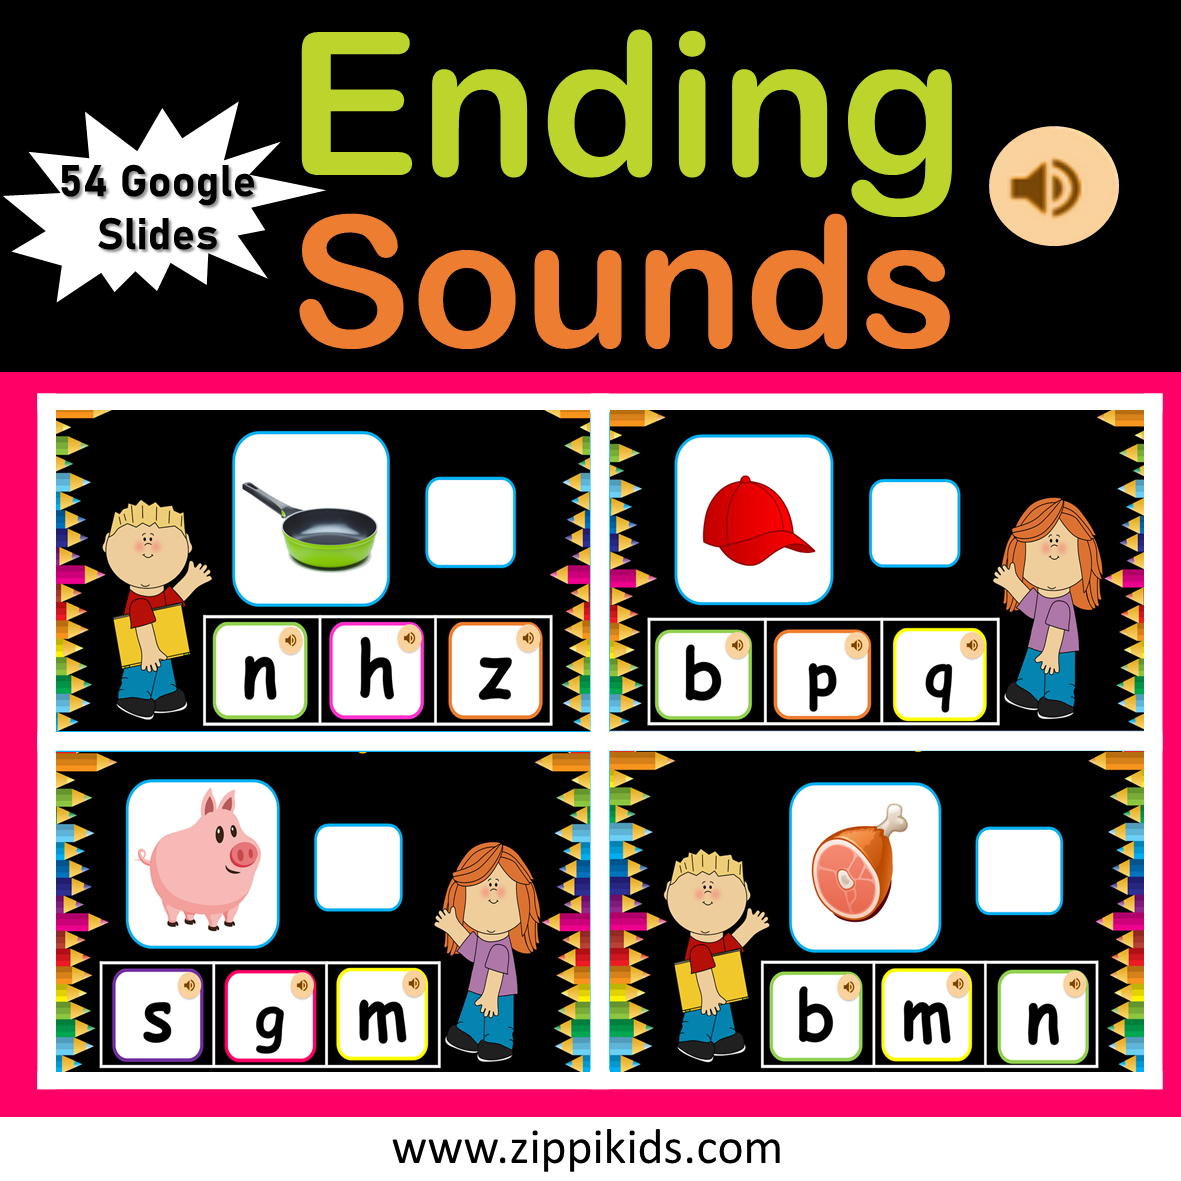 Ending Sounds, Virtual, Letter Recognition, CVC Words, Phonics – 54 Google Slides